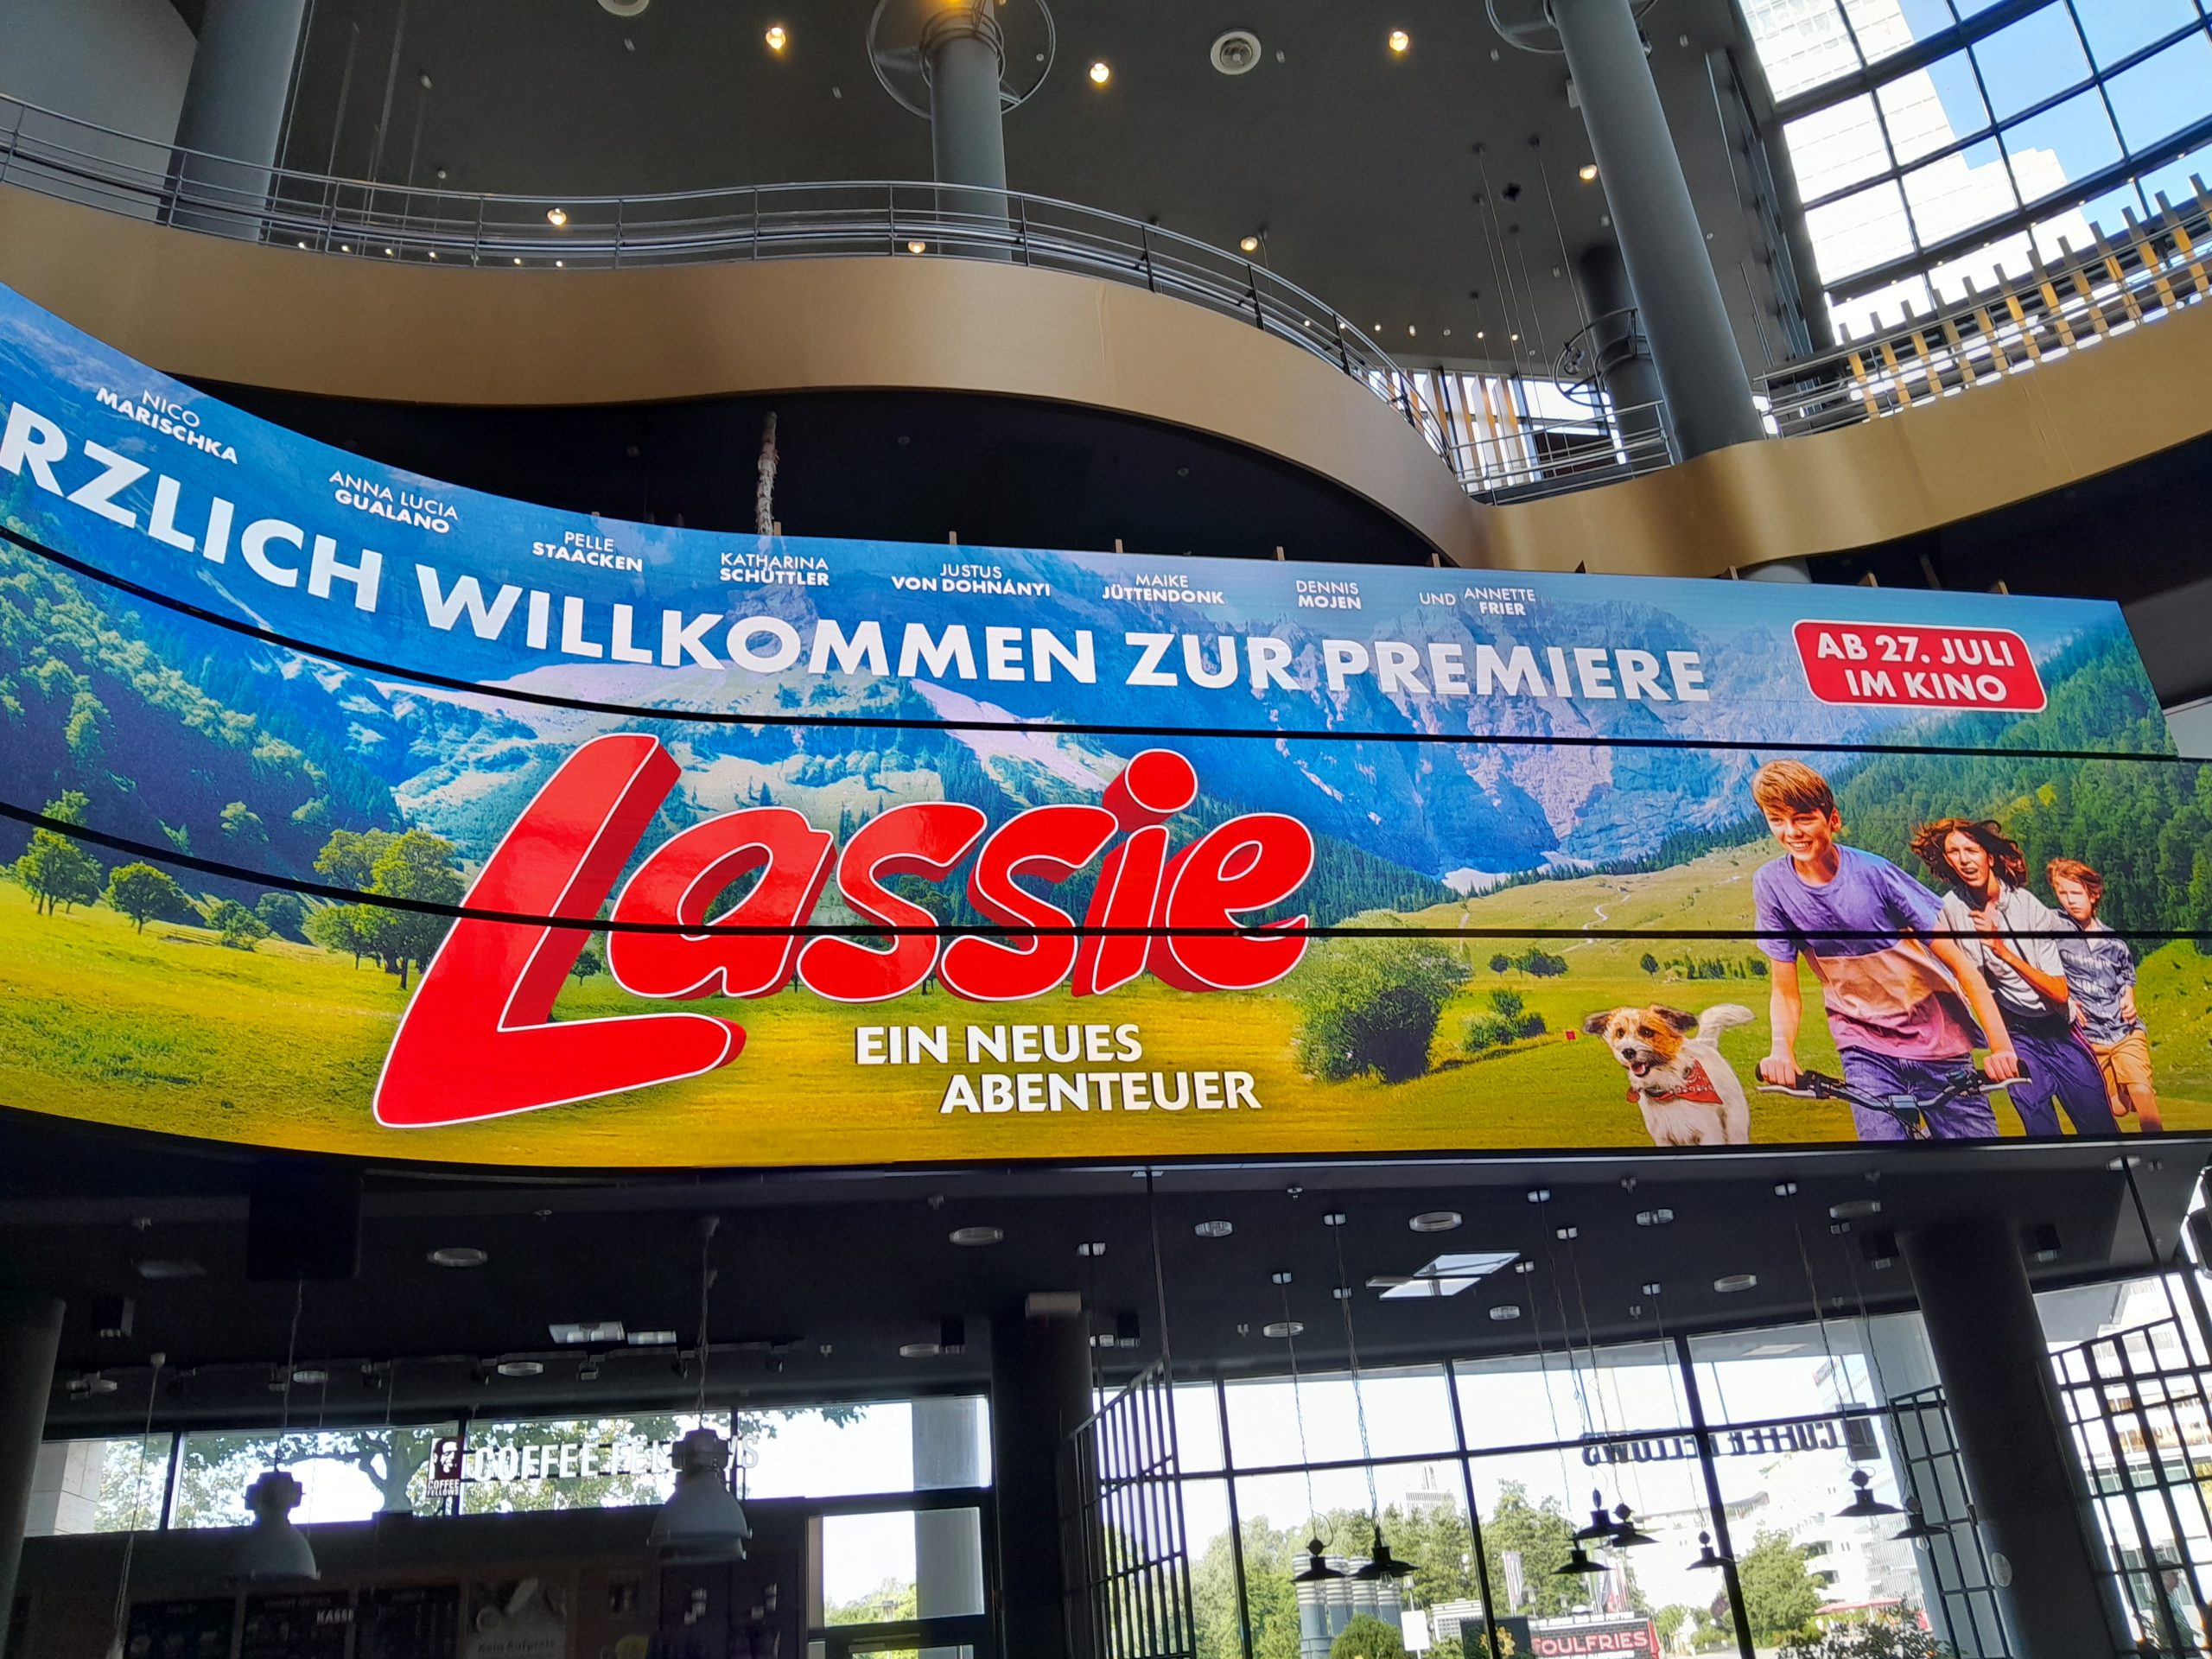 Die Lassie Premiere in Köln - ein riesiges Willkommensposter auf einer Leinwand